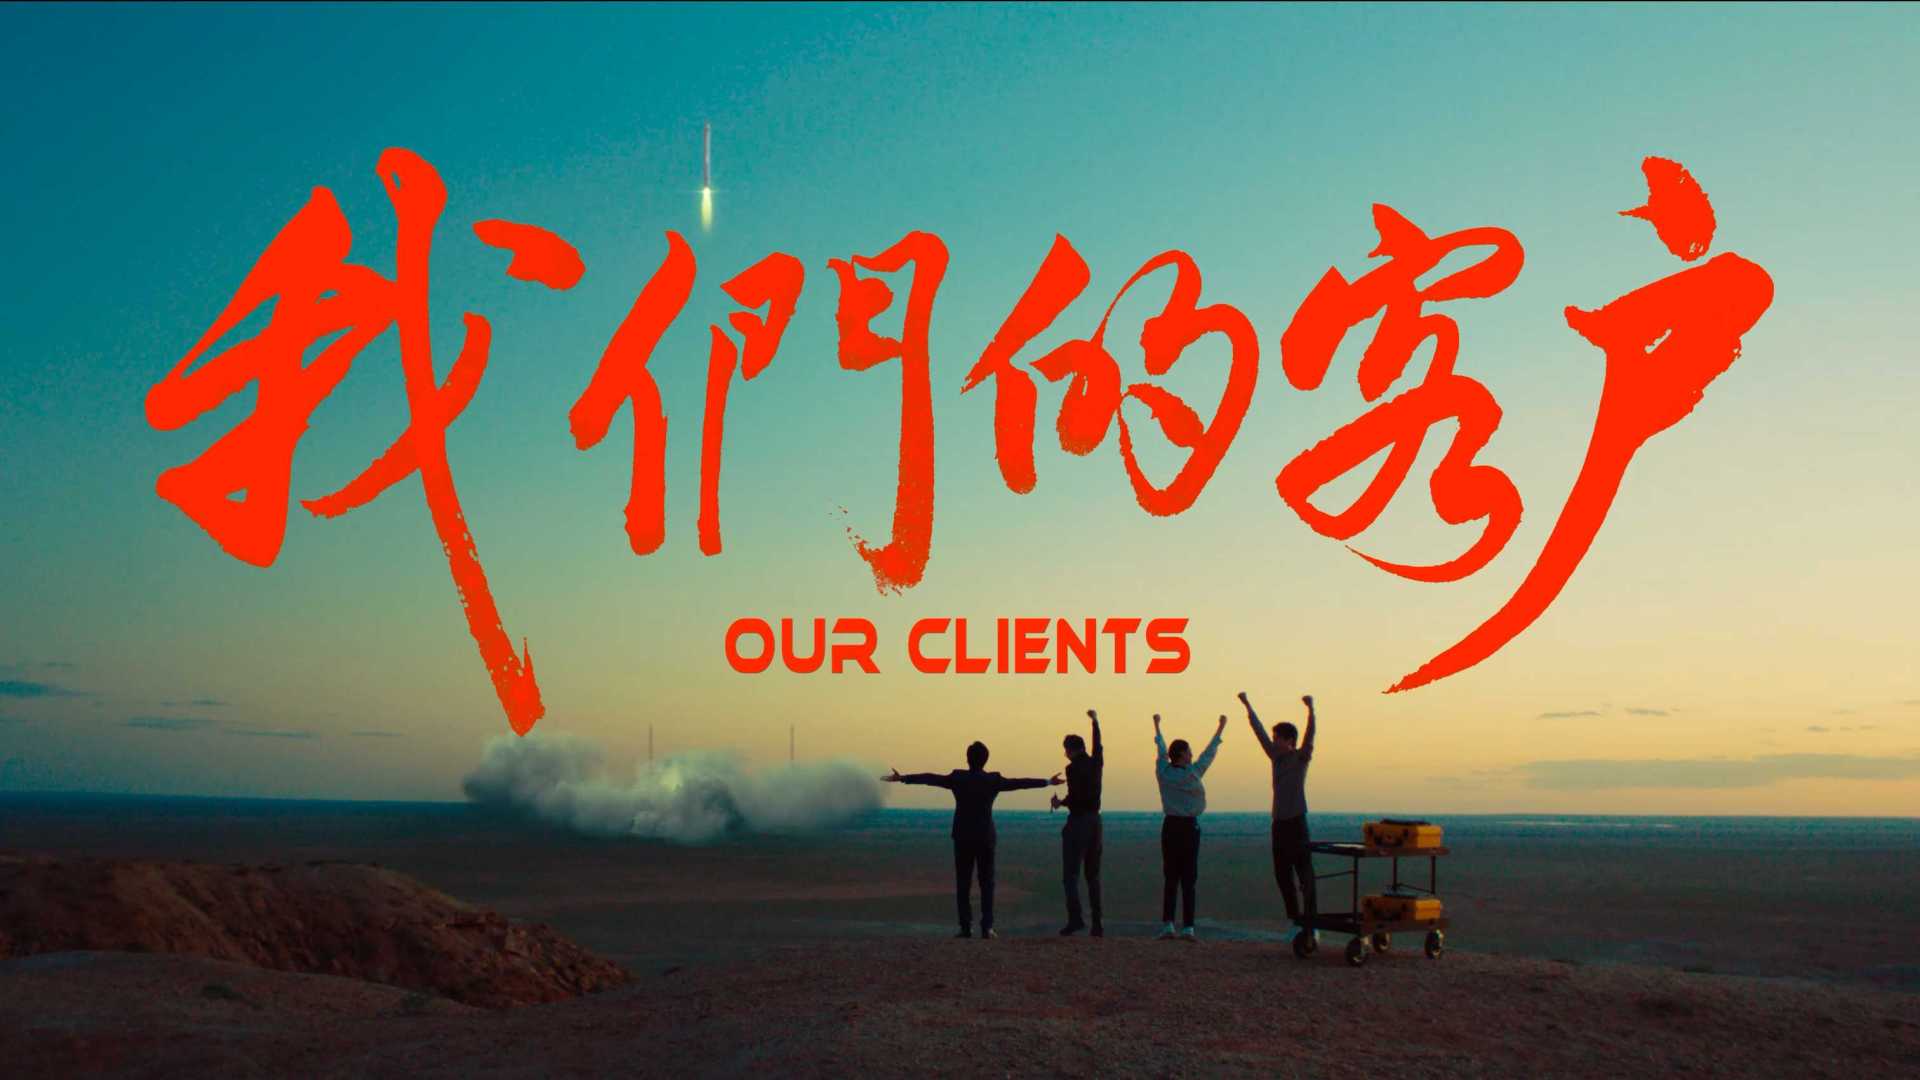 中国平安| 《“我们的客户”》 DIR VERSION